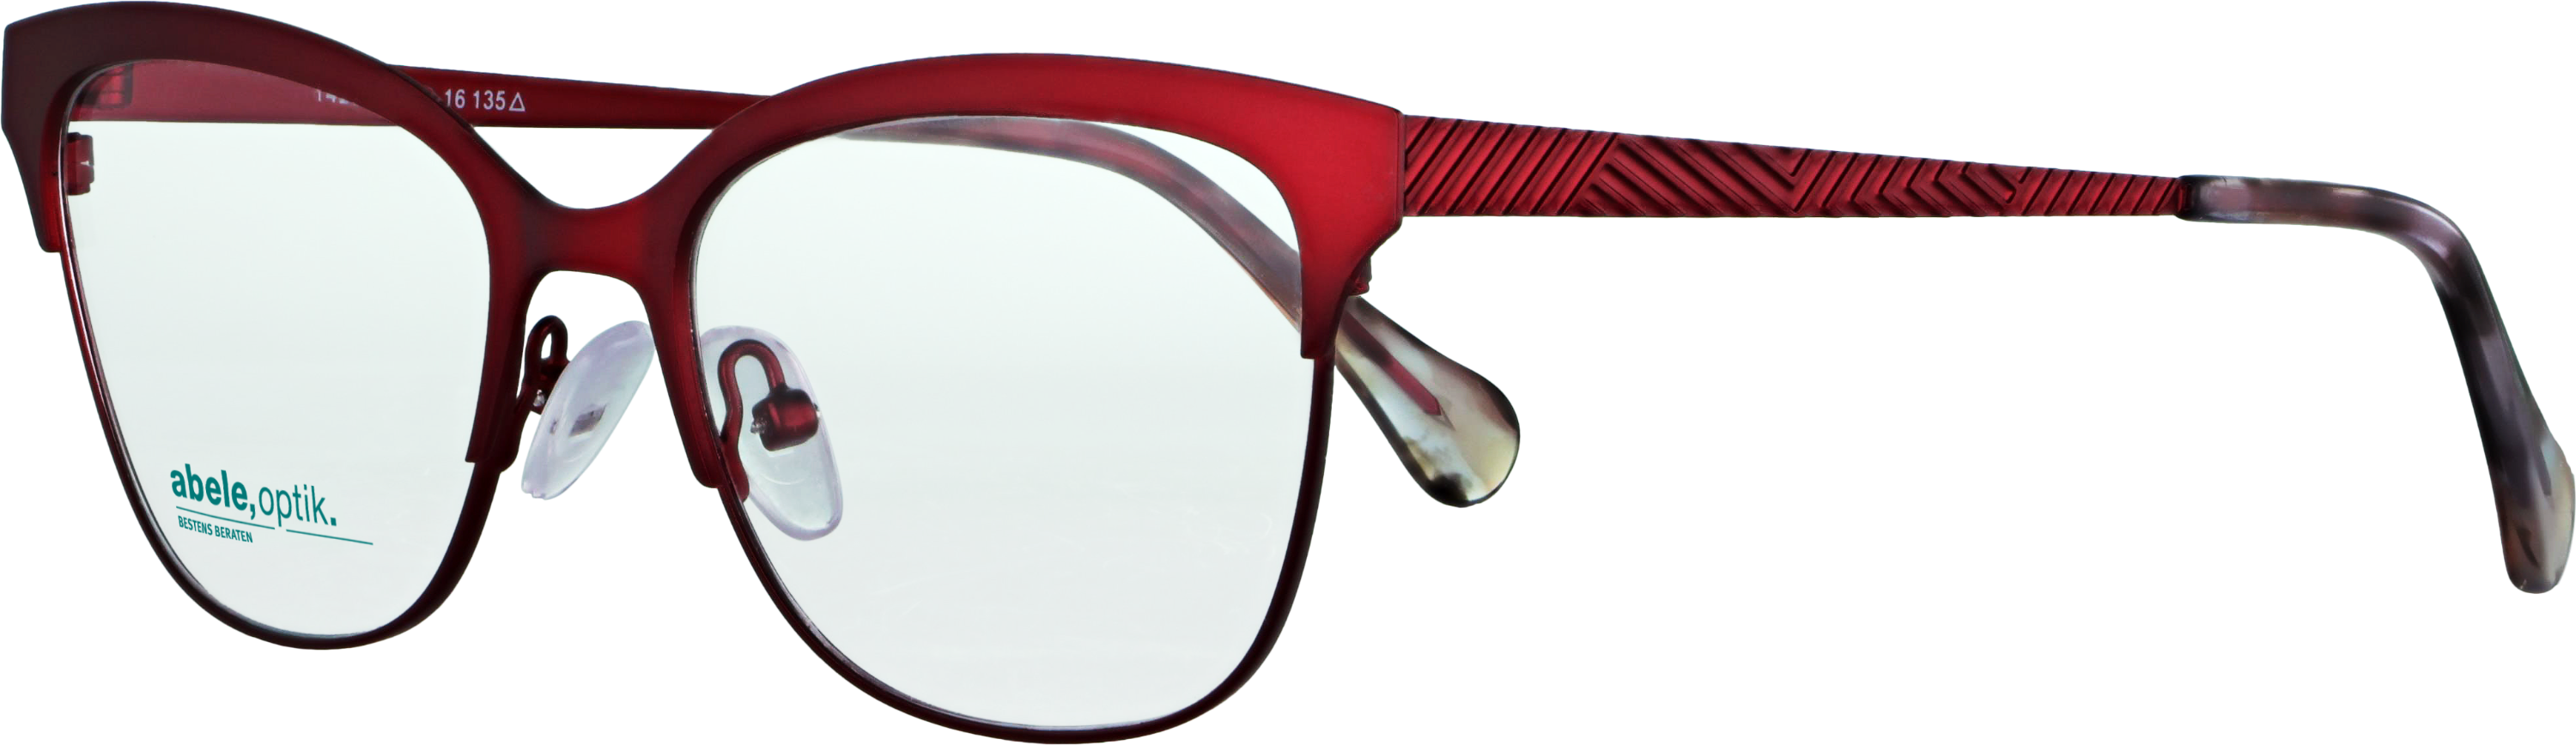 Das Bild zeigt die Korrektionsbrille 142231 von der Marke Abele Optik in rot matt.